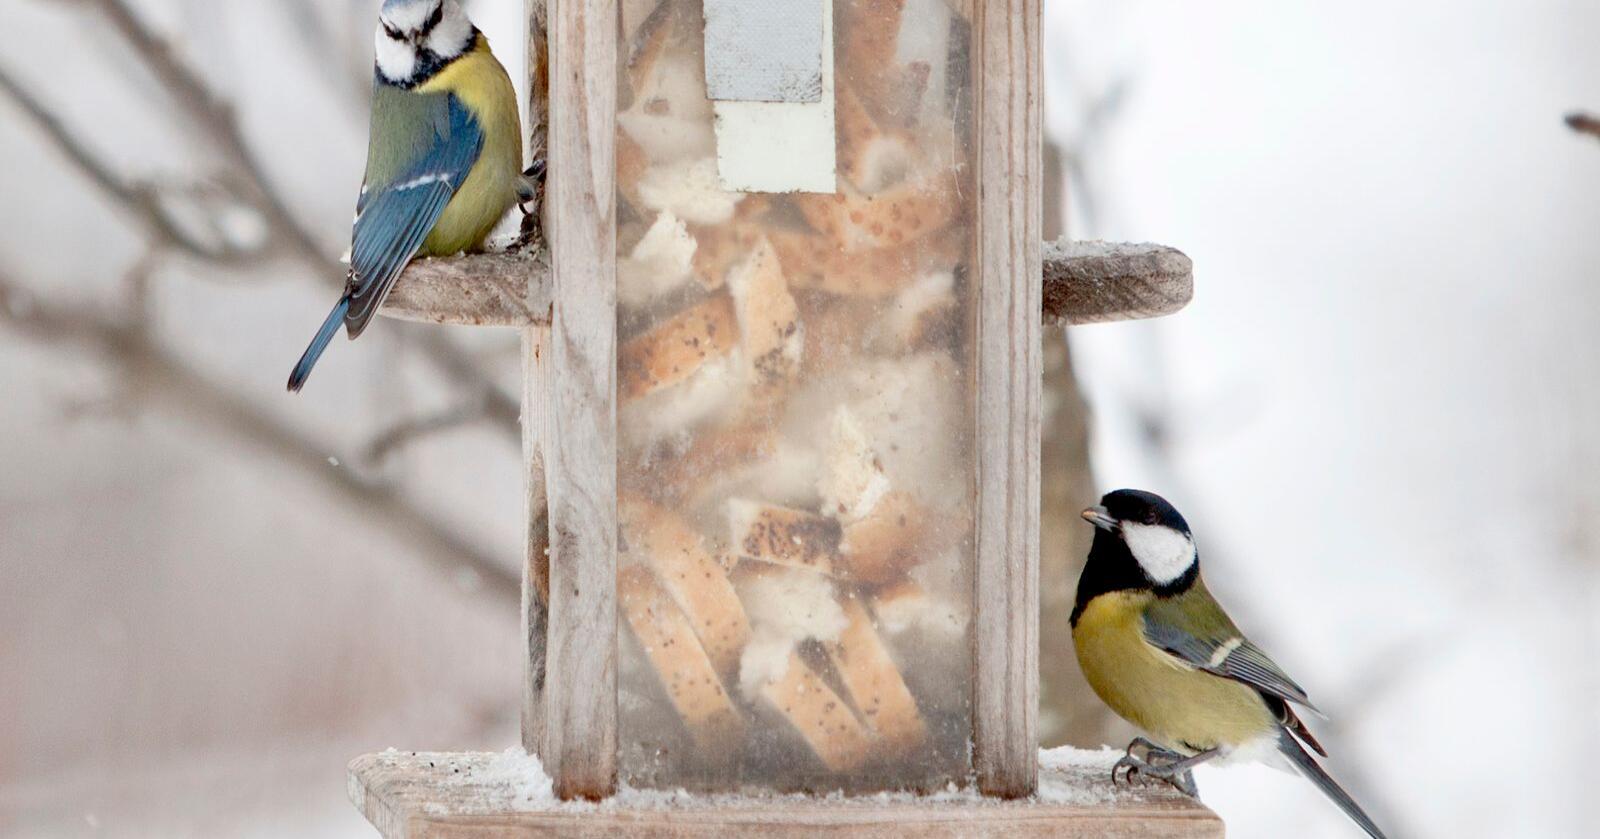 Mugg og salmonella kan skjule seg i fuglematen om den ligger på brett. Best er det om maten får henge. Foto: Paul Kleiven / NTB